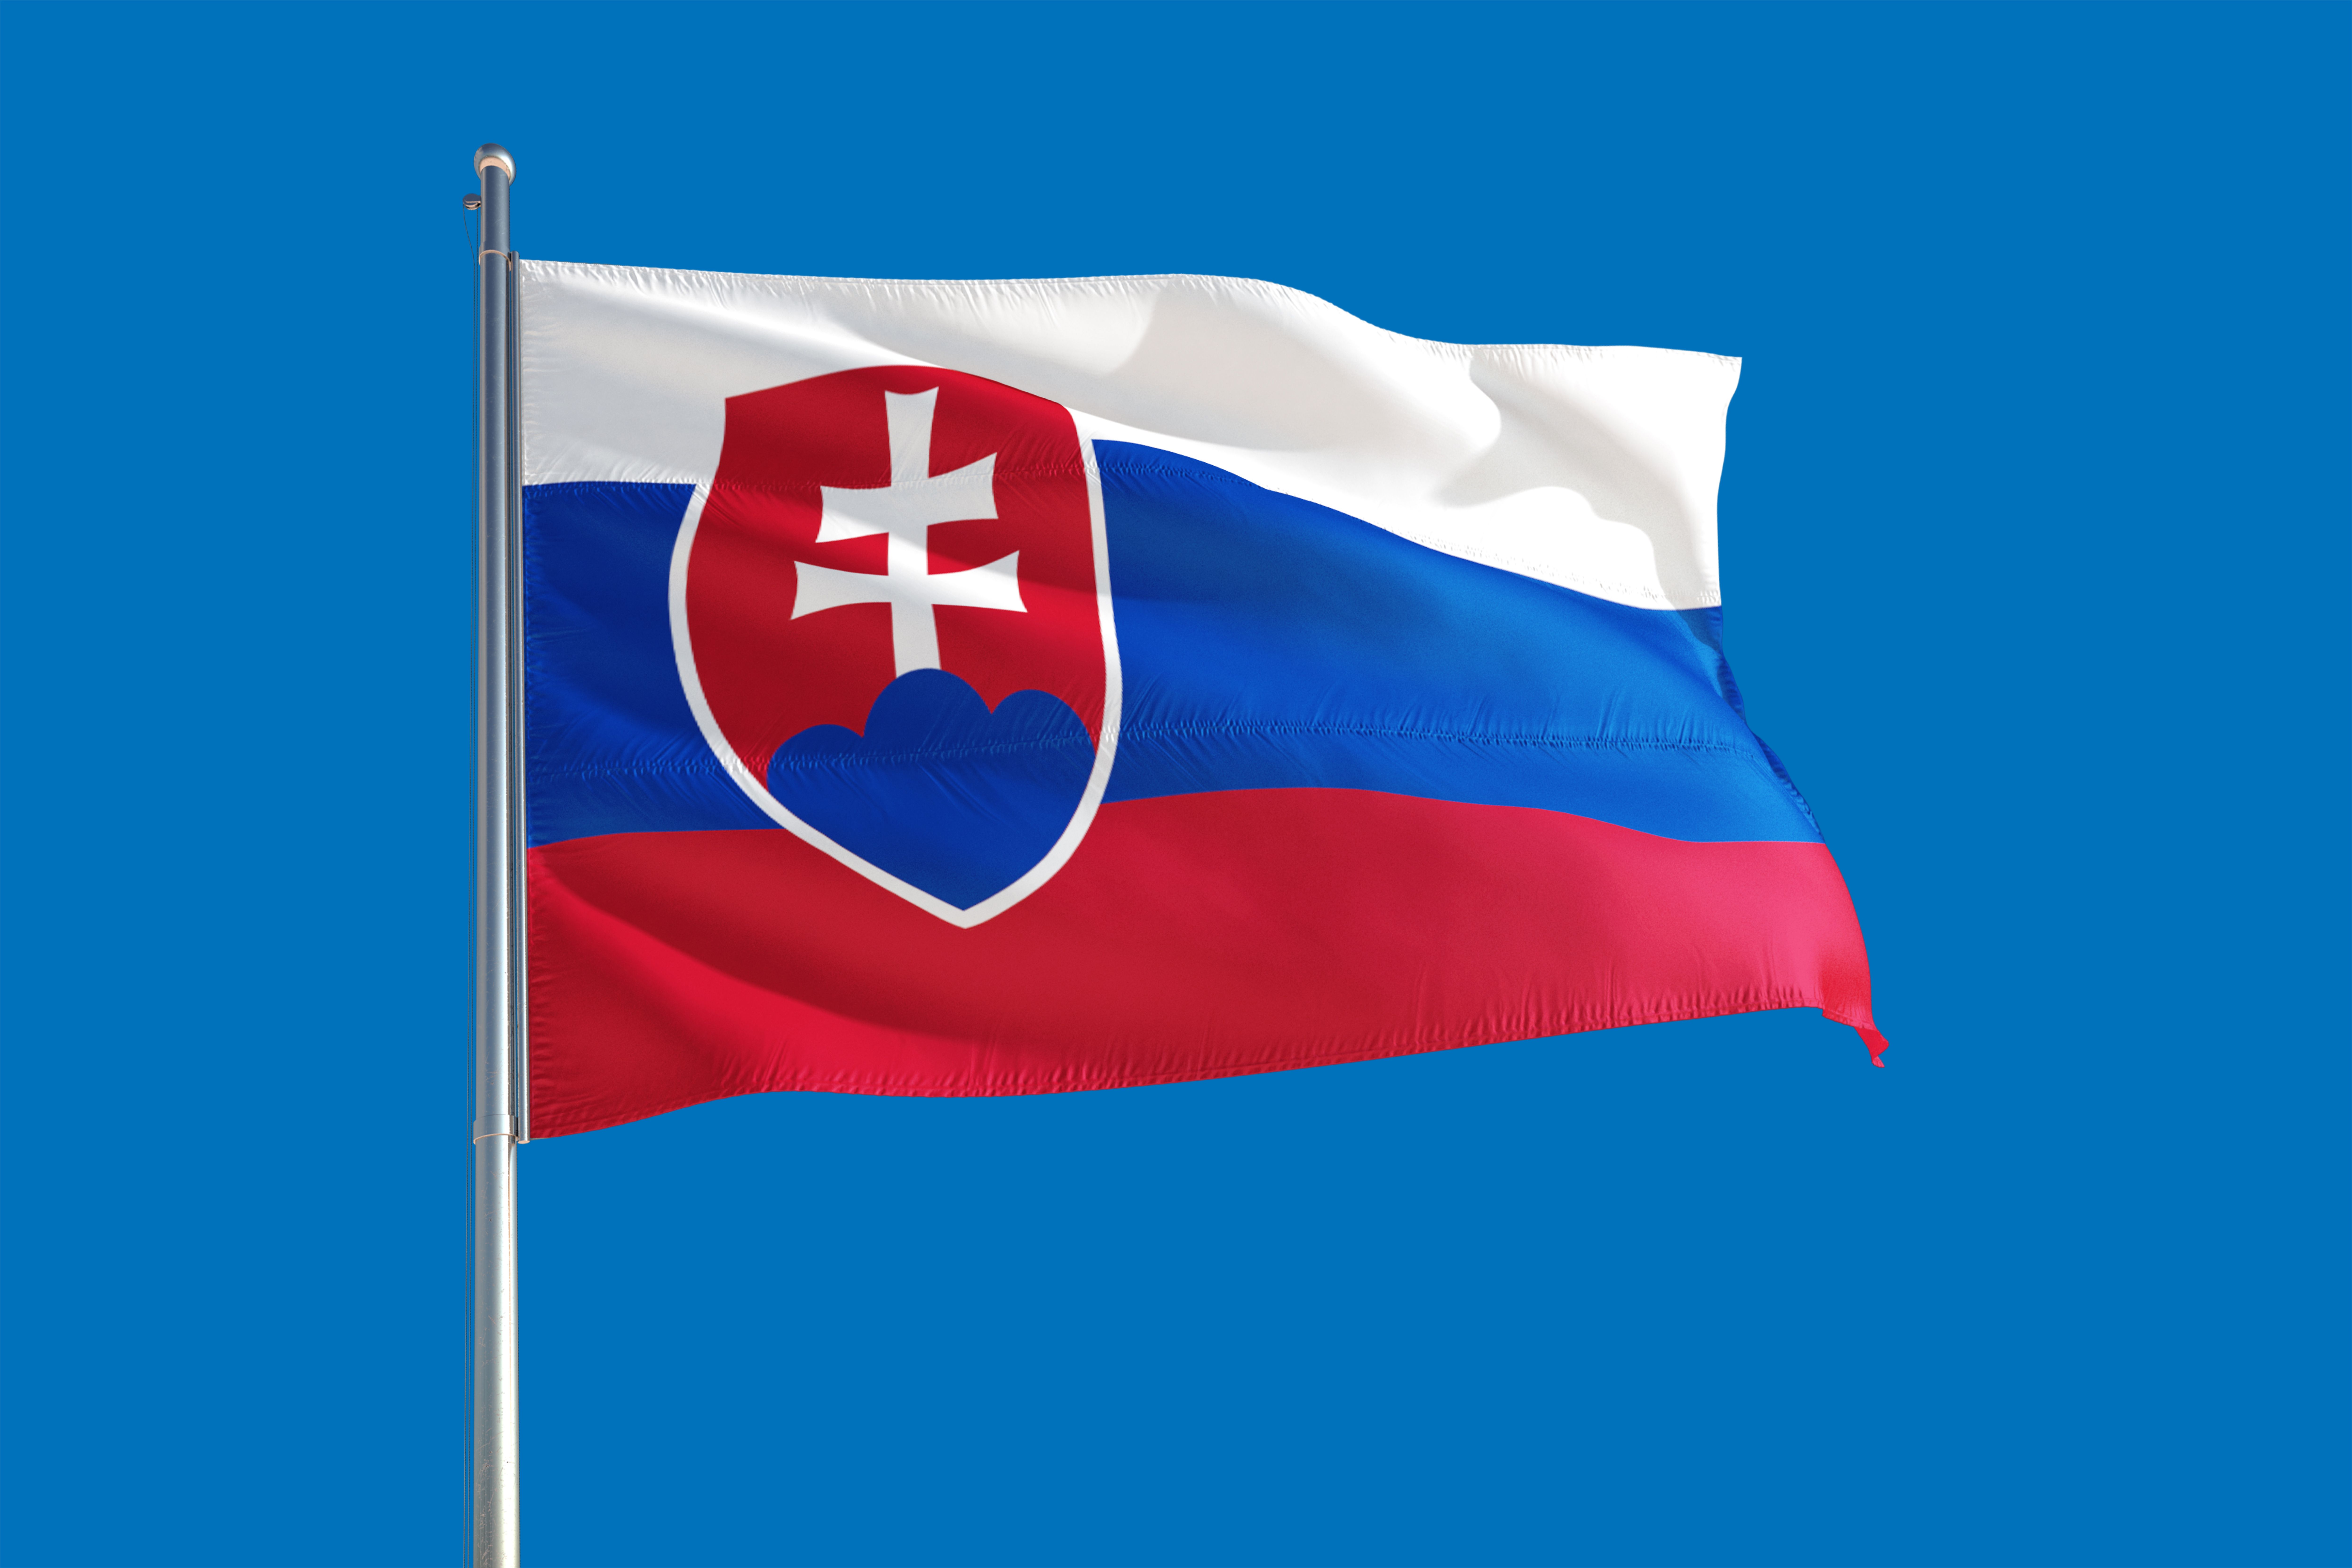 Флаг Словакии, работа в которой доступна для иностранцев